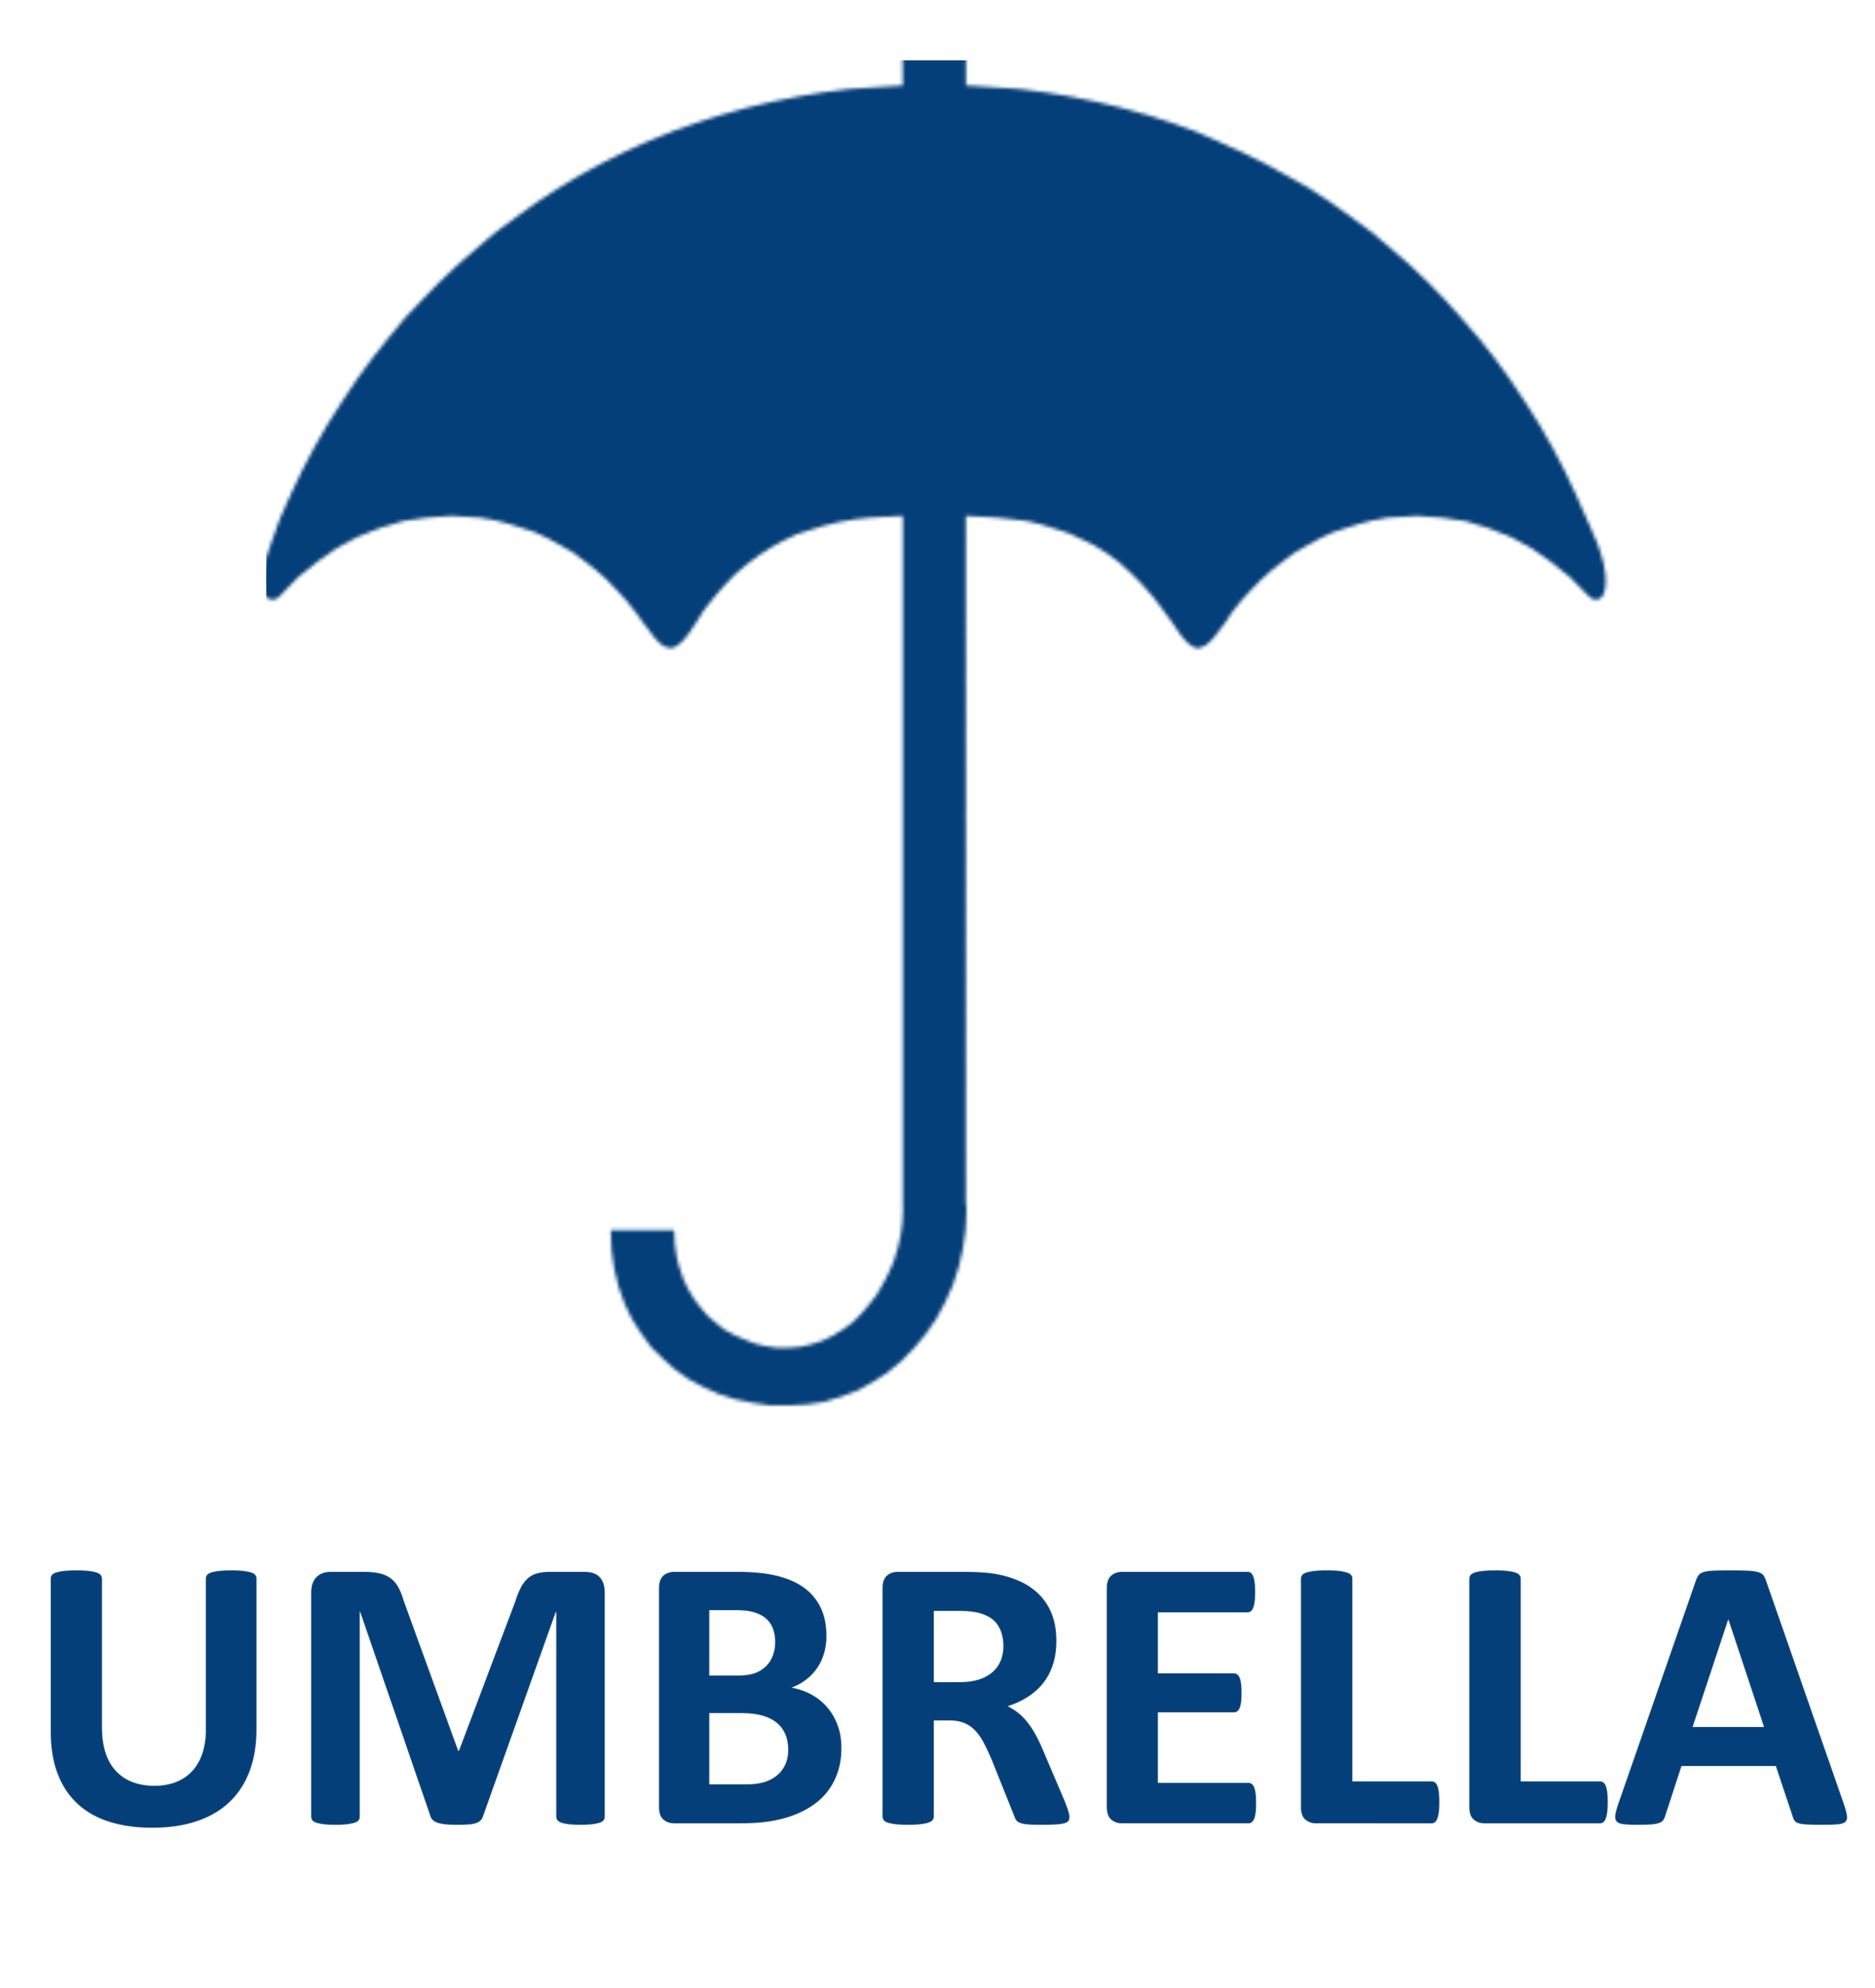 Umbrella Policy Insurance